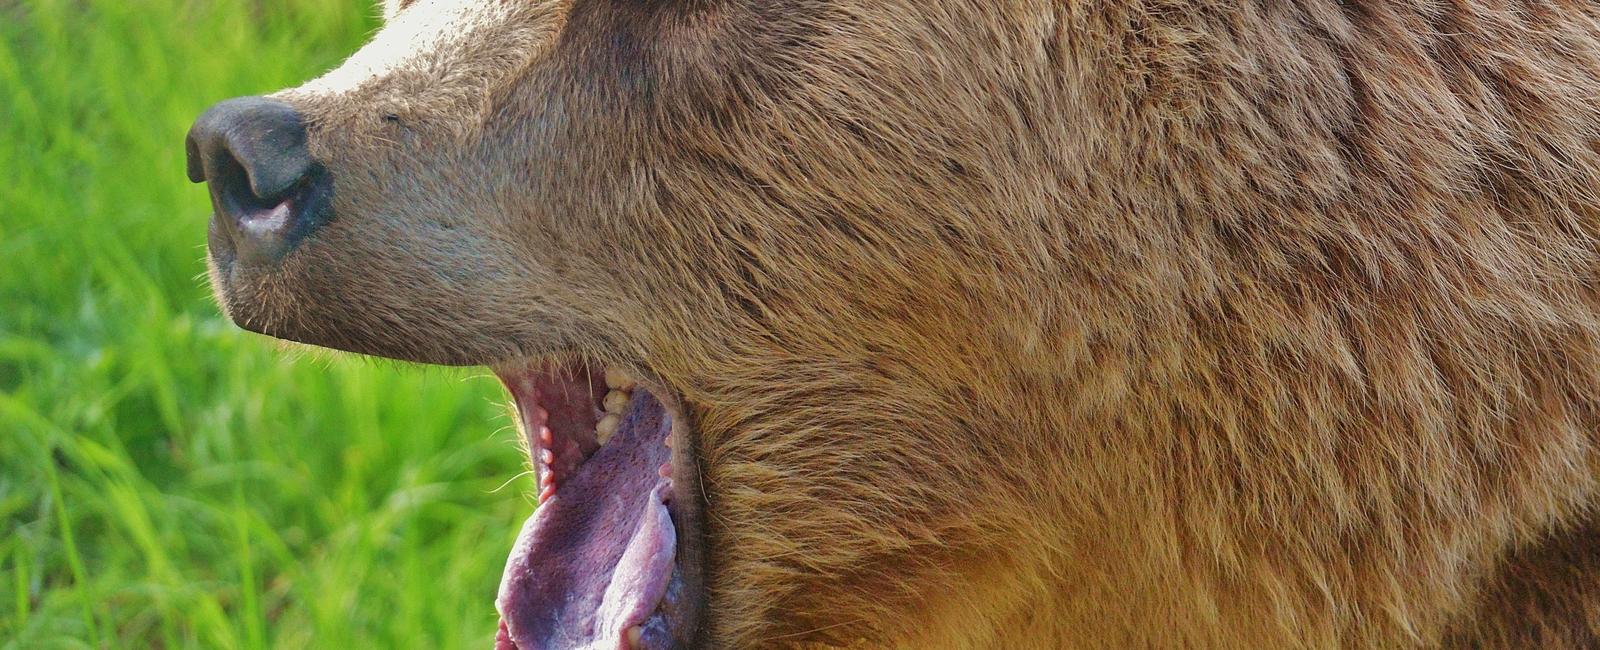 A bear has 42 teeth